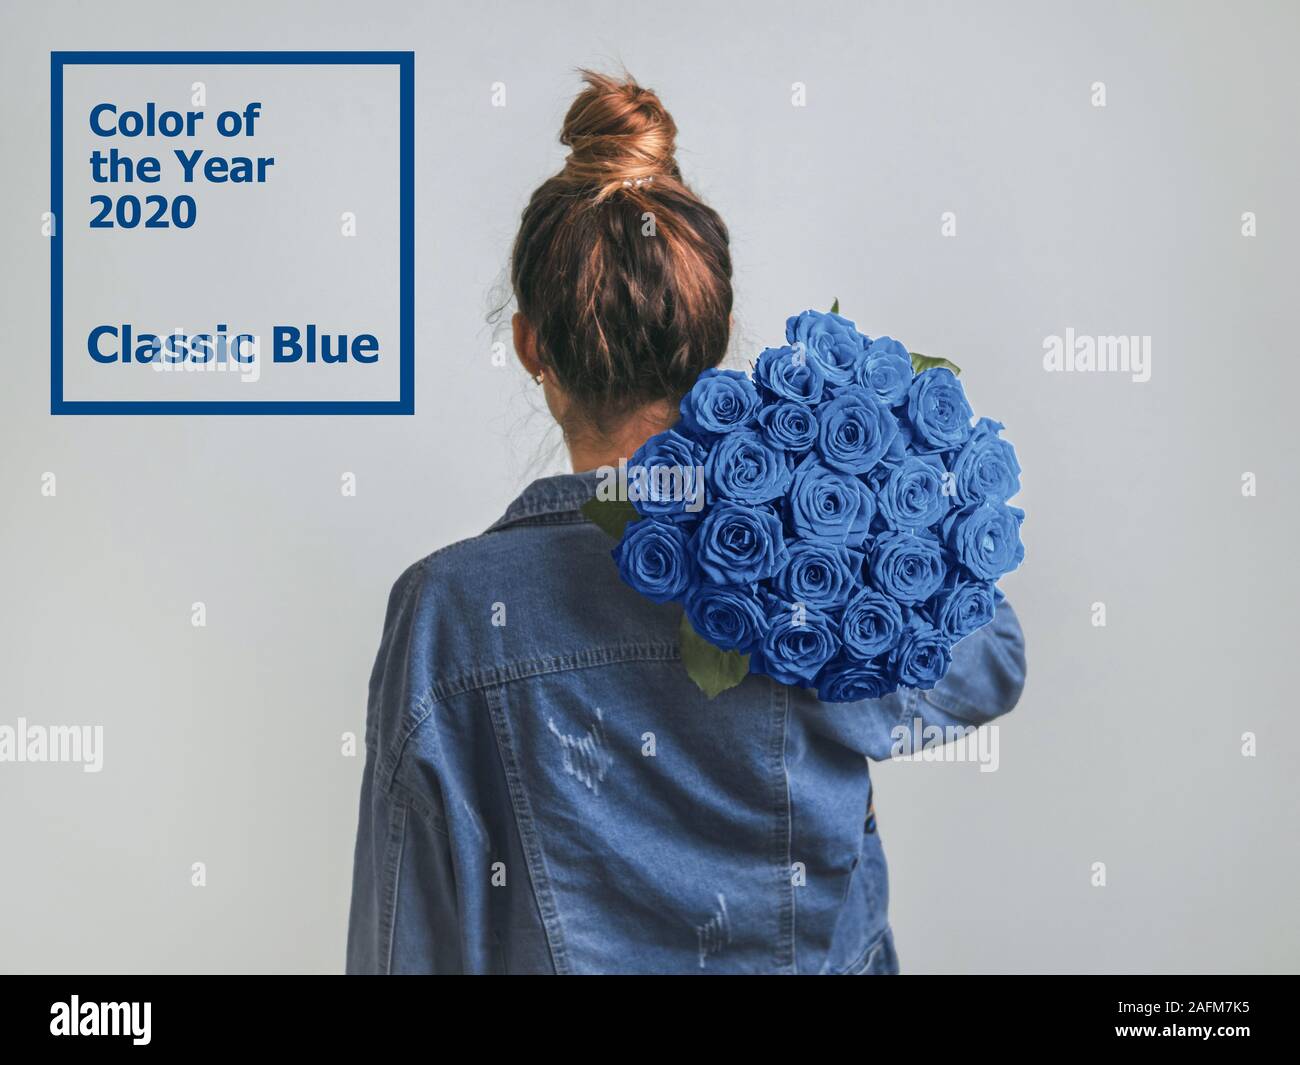 Vue arrière de jeune femme en denim jacket holding bunch of roses bleu sur l'épaule. Fille avec bun updo en jeans holding Flowers en couleur de l'année 2020 Bleu classique Banque D'Images